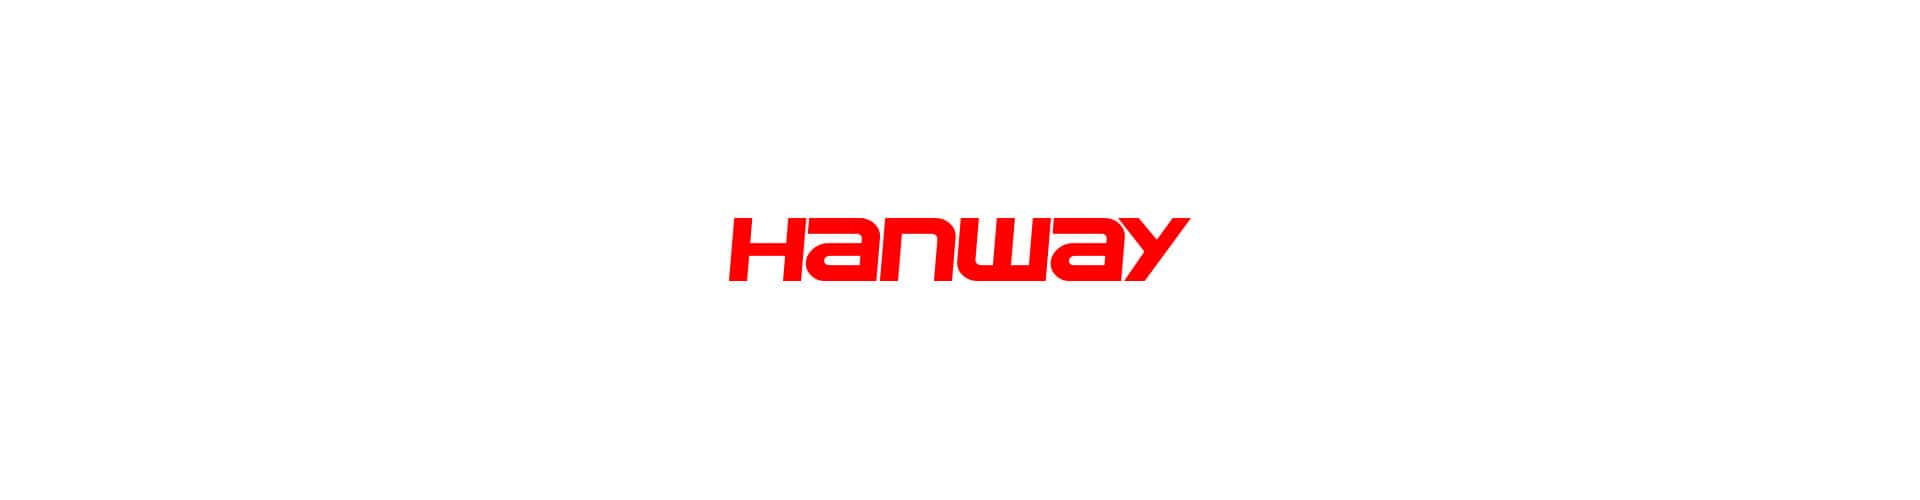 hanway 